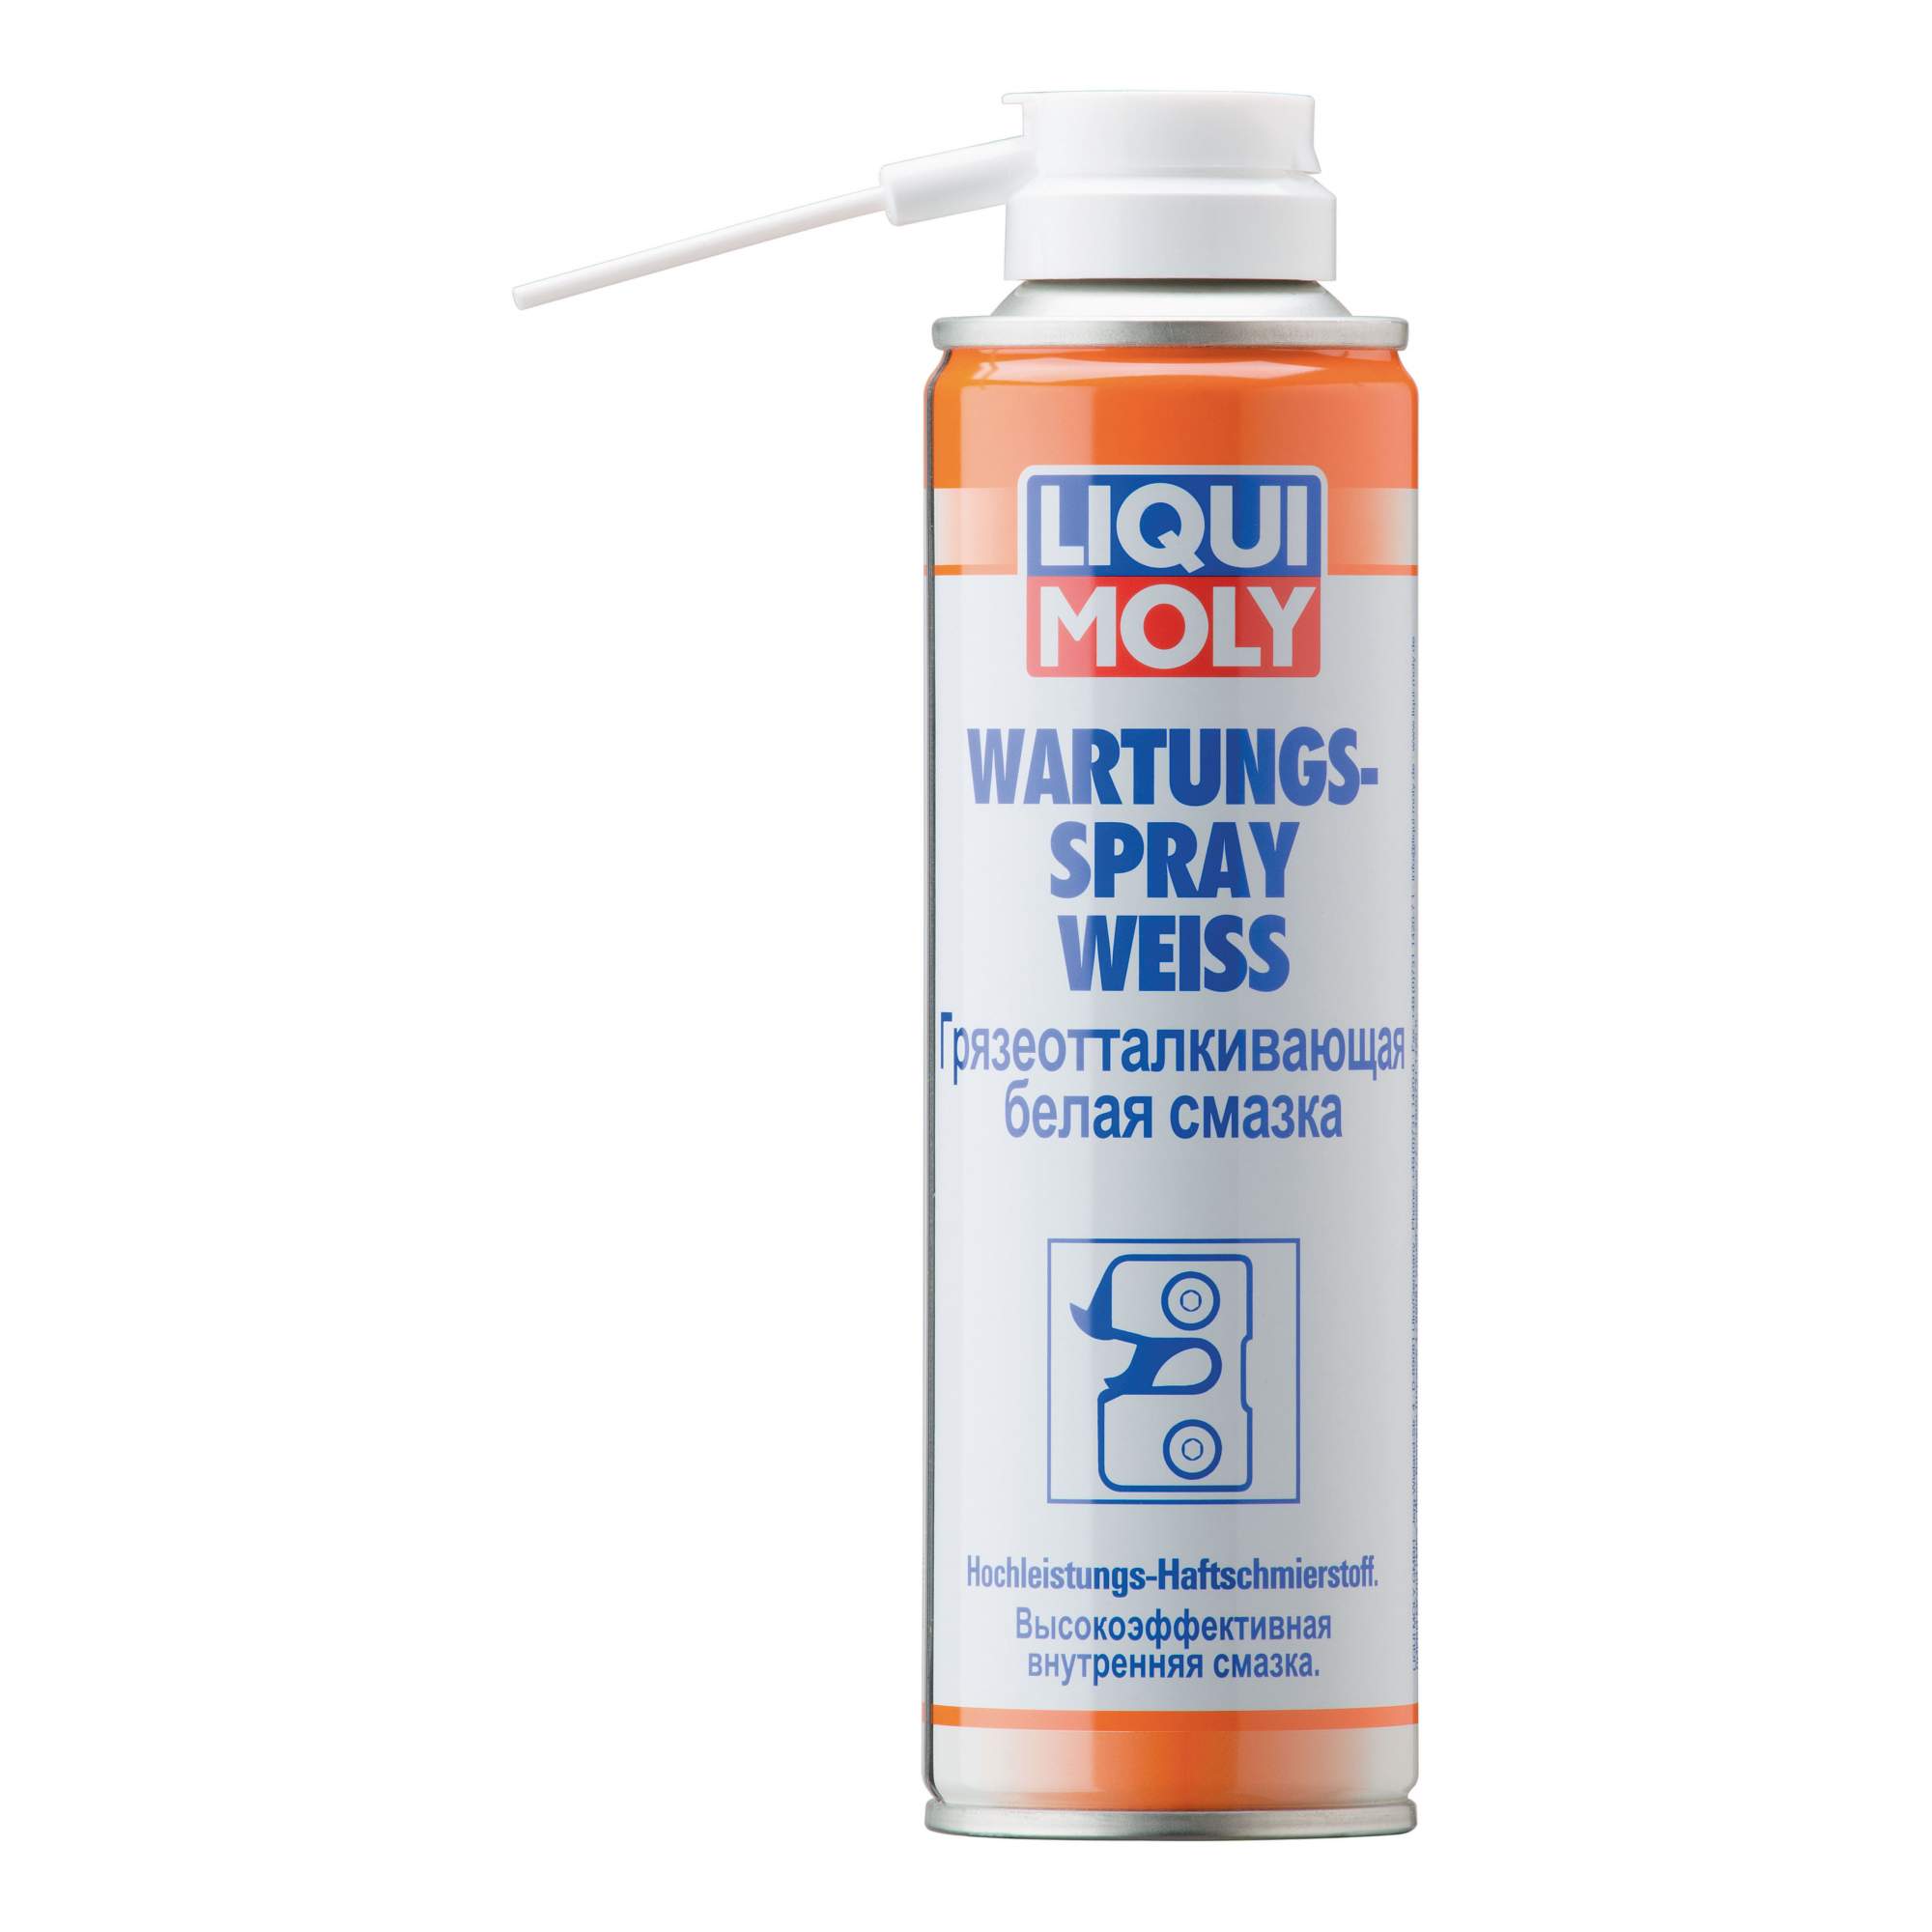 Грязеотталкивающая белая смазка LIQUI MOLY 3953 Wartungs-Spray weiss - купить в Москве, цены на Мегамаркет | 100000400261